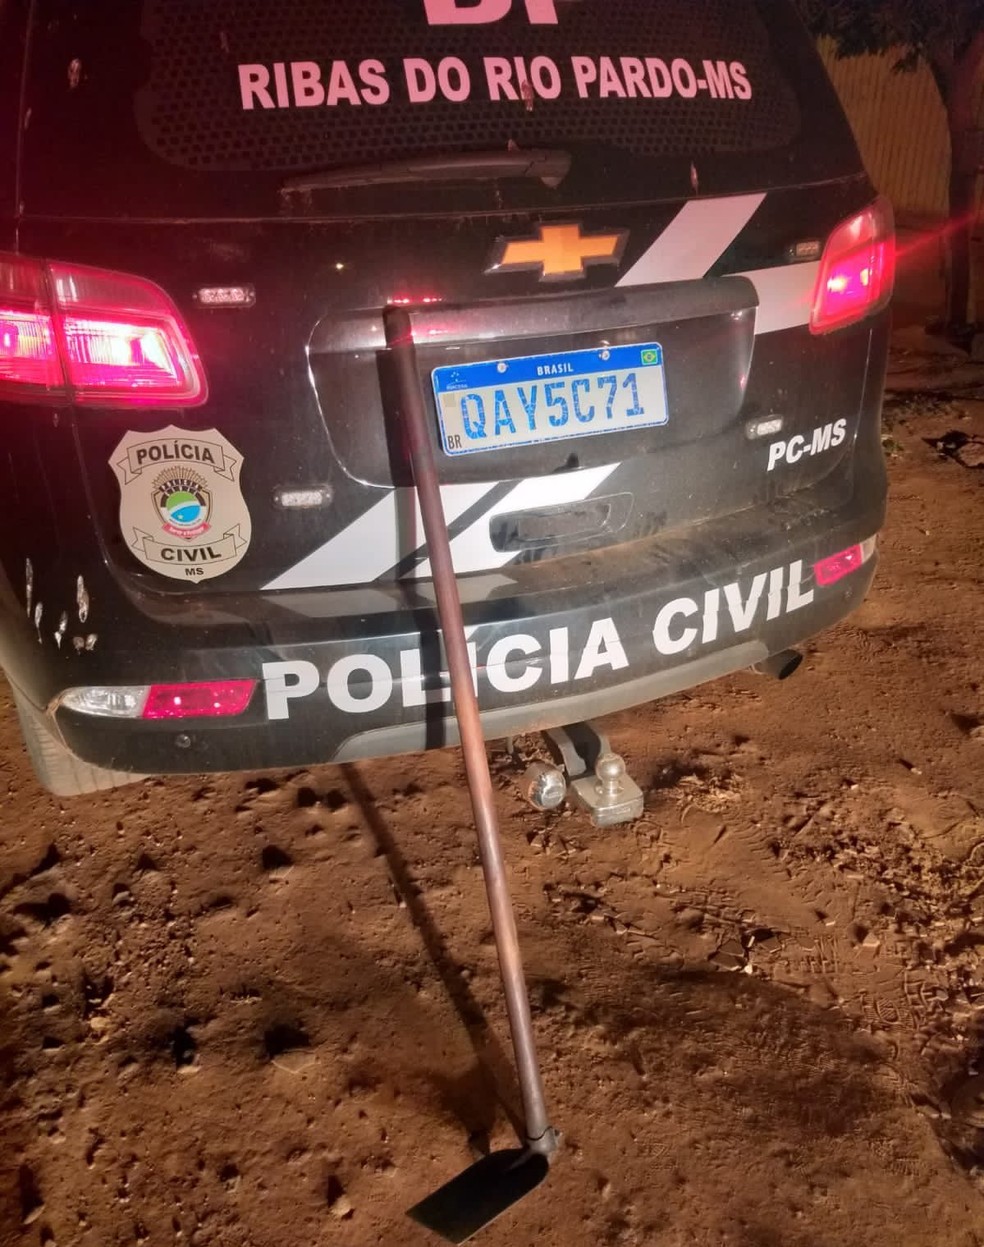 Enxada usada para danificar o carro foi apreendida — Foto: Polícia Civil/Divulgação